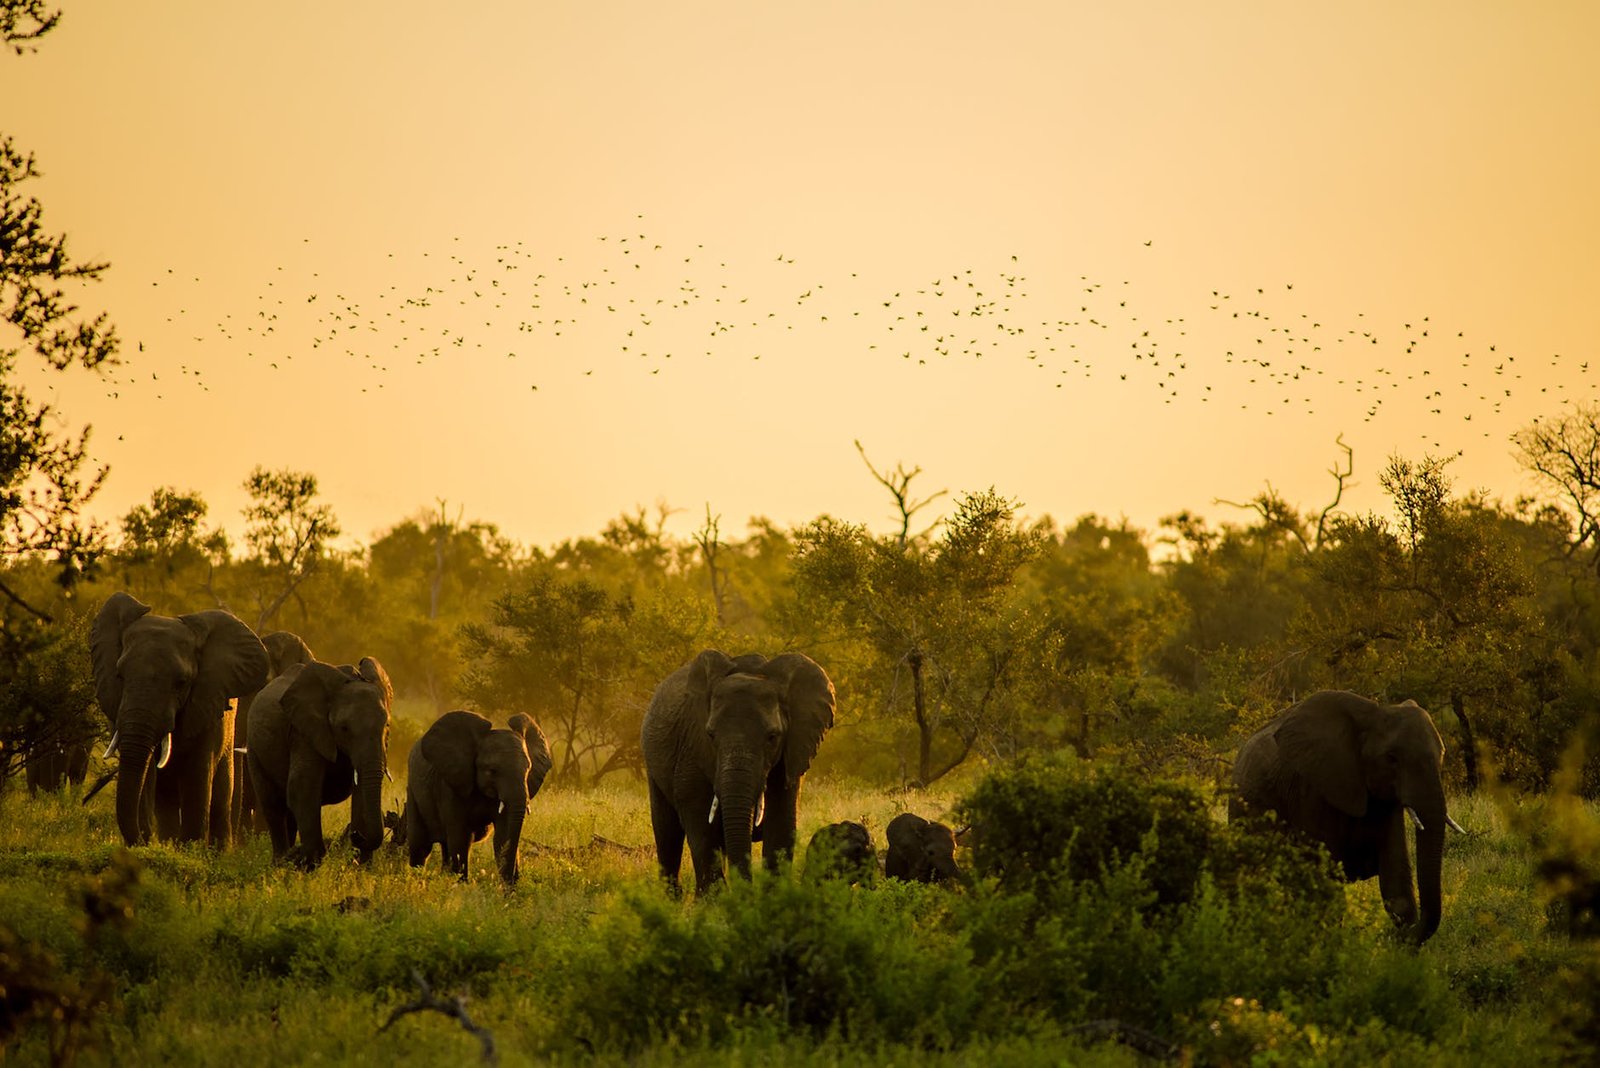 elephants at sunset in kruger park